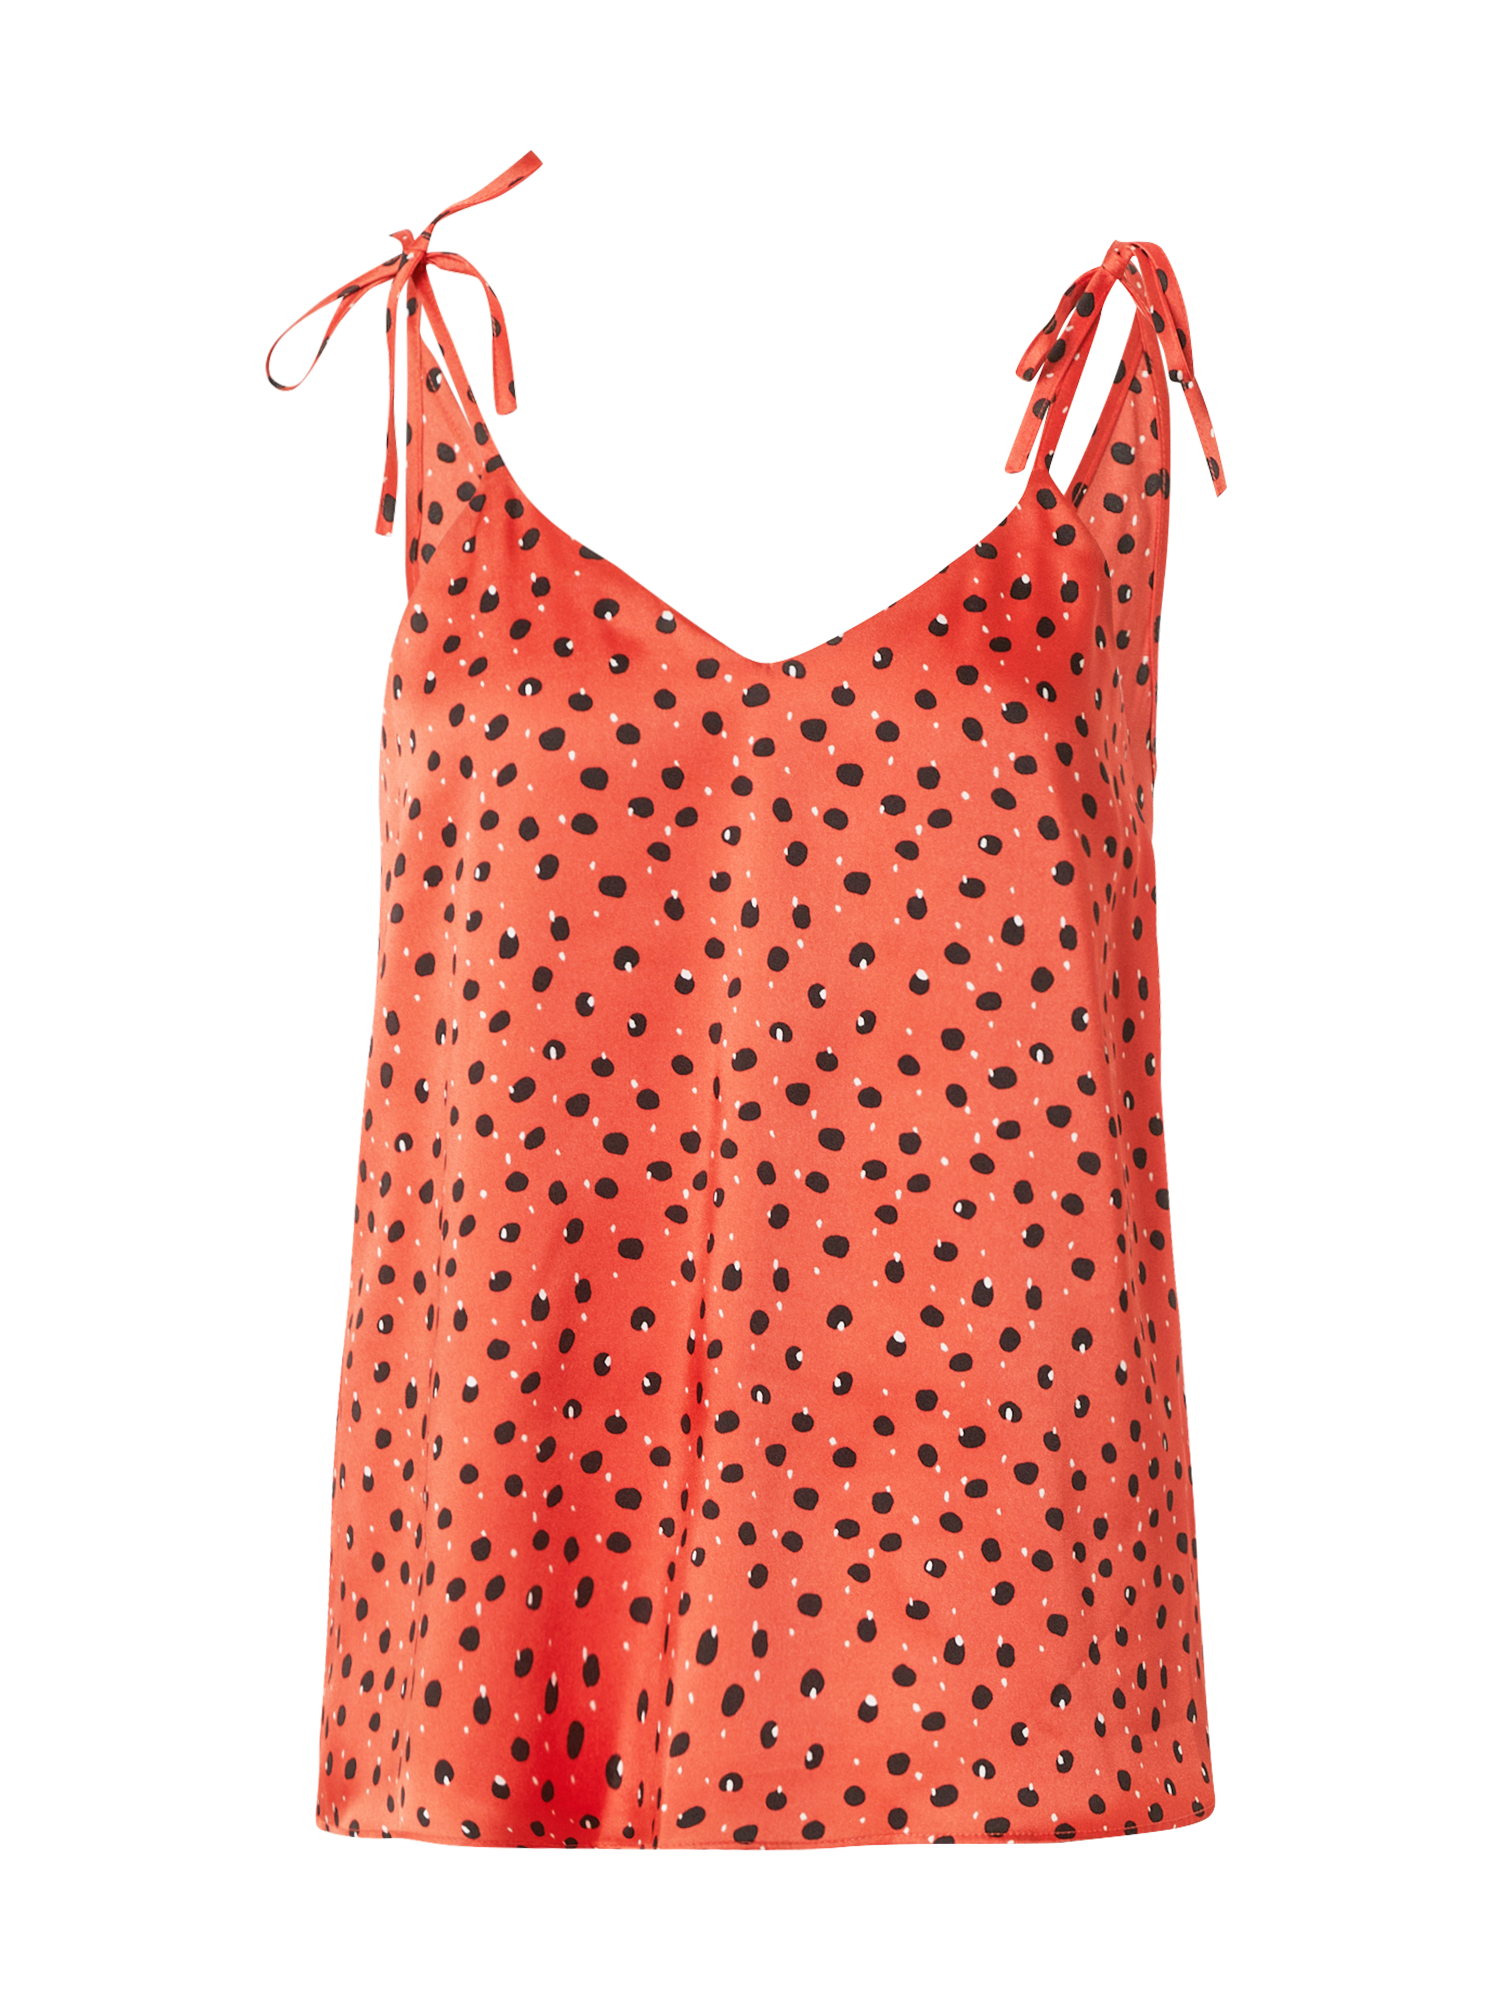 Kobiety Odzież River Island Top w kolorze Pomarańczowo-Czerwonym 